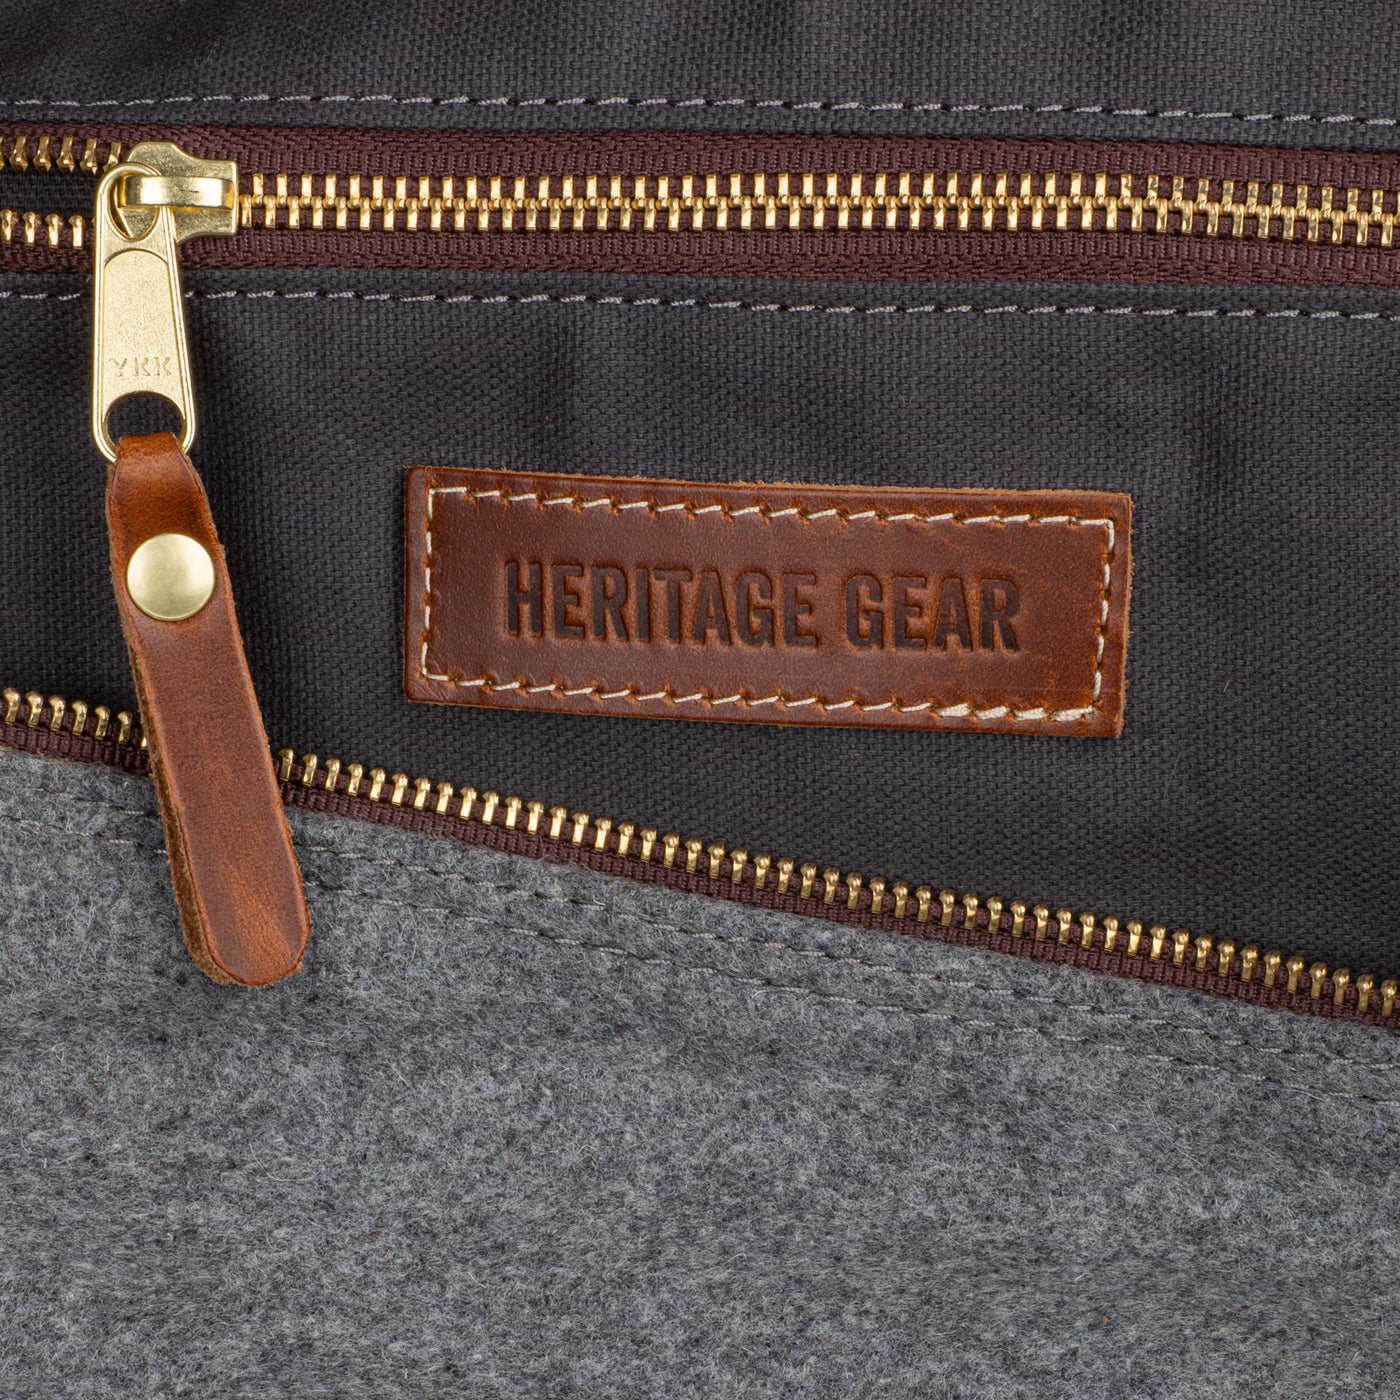 University of Alabama “A” Weekender Duffle Bag | Heritage Gear